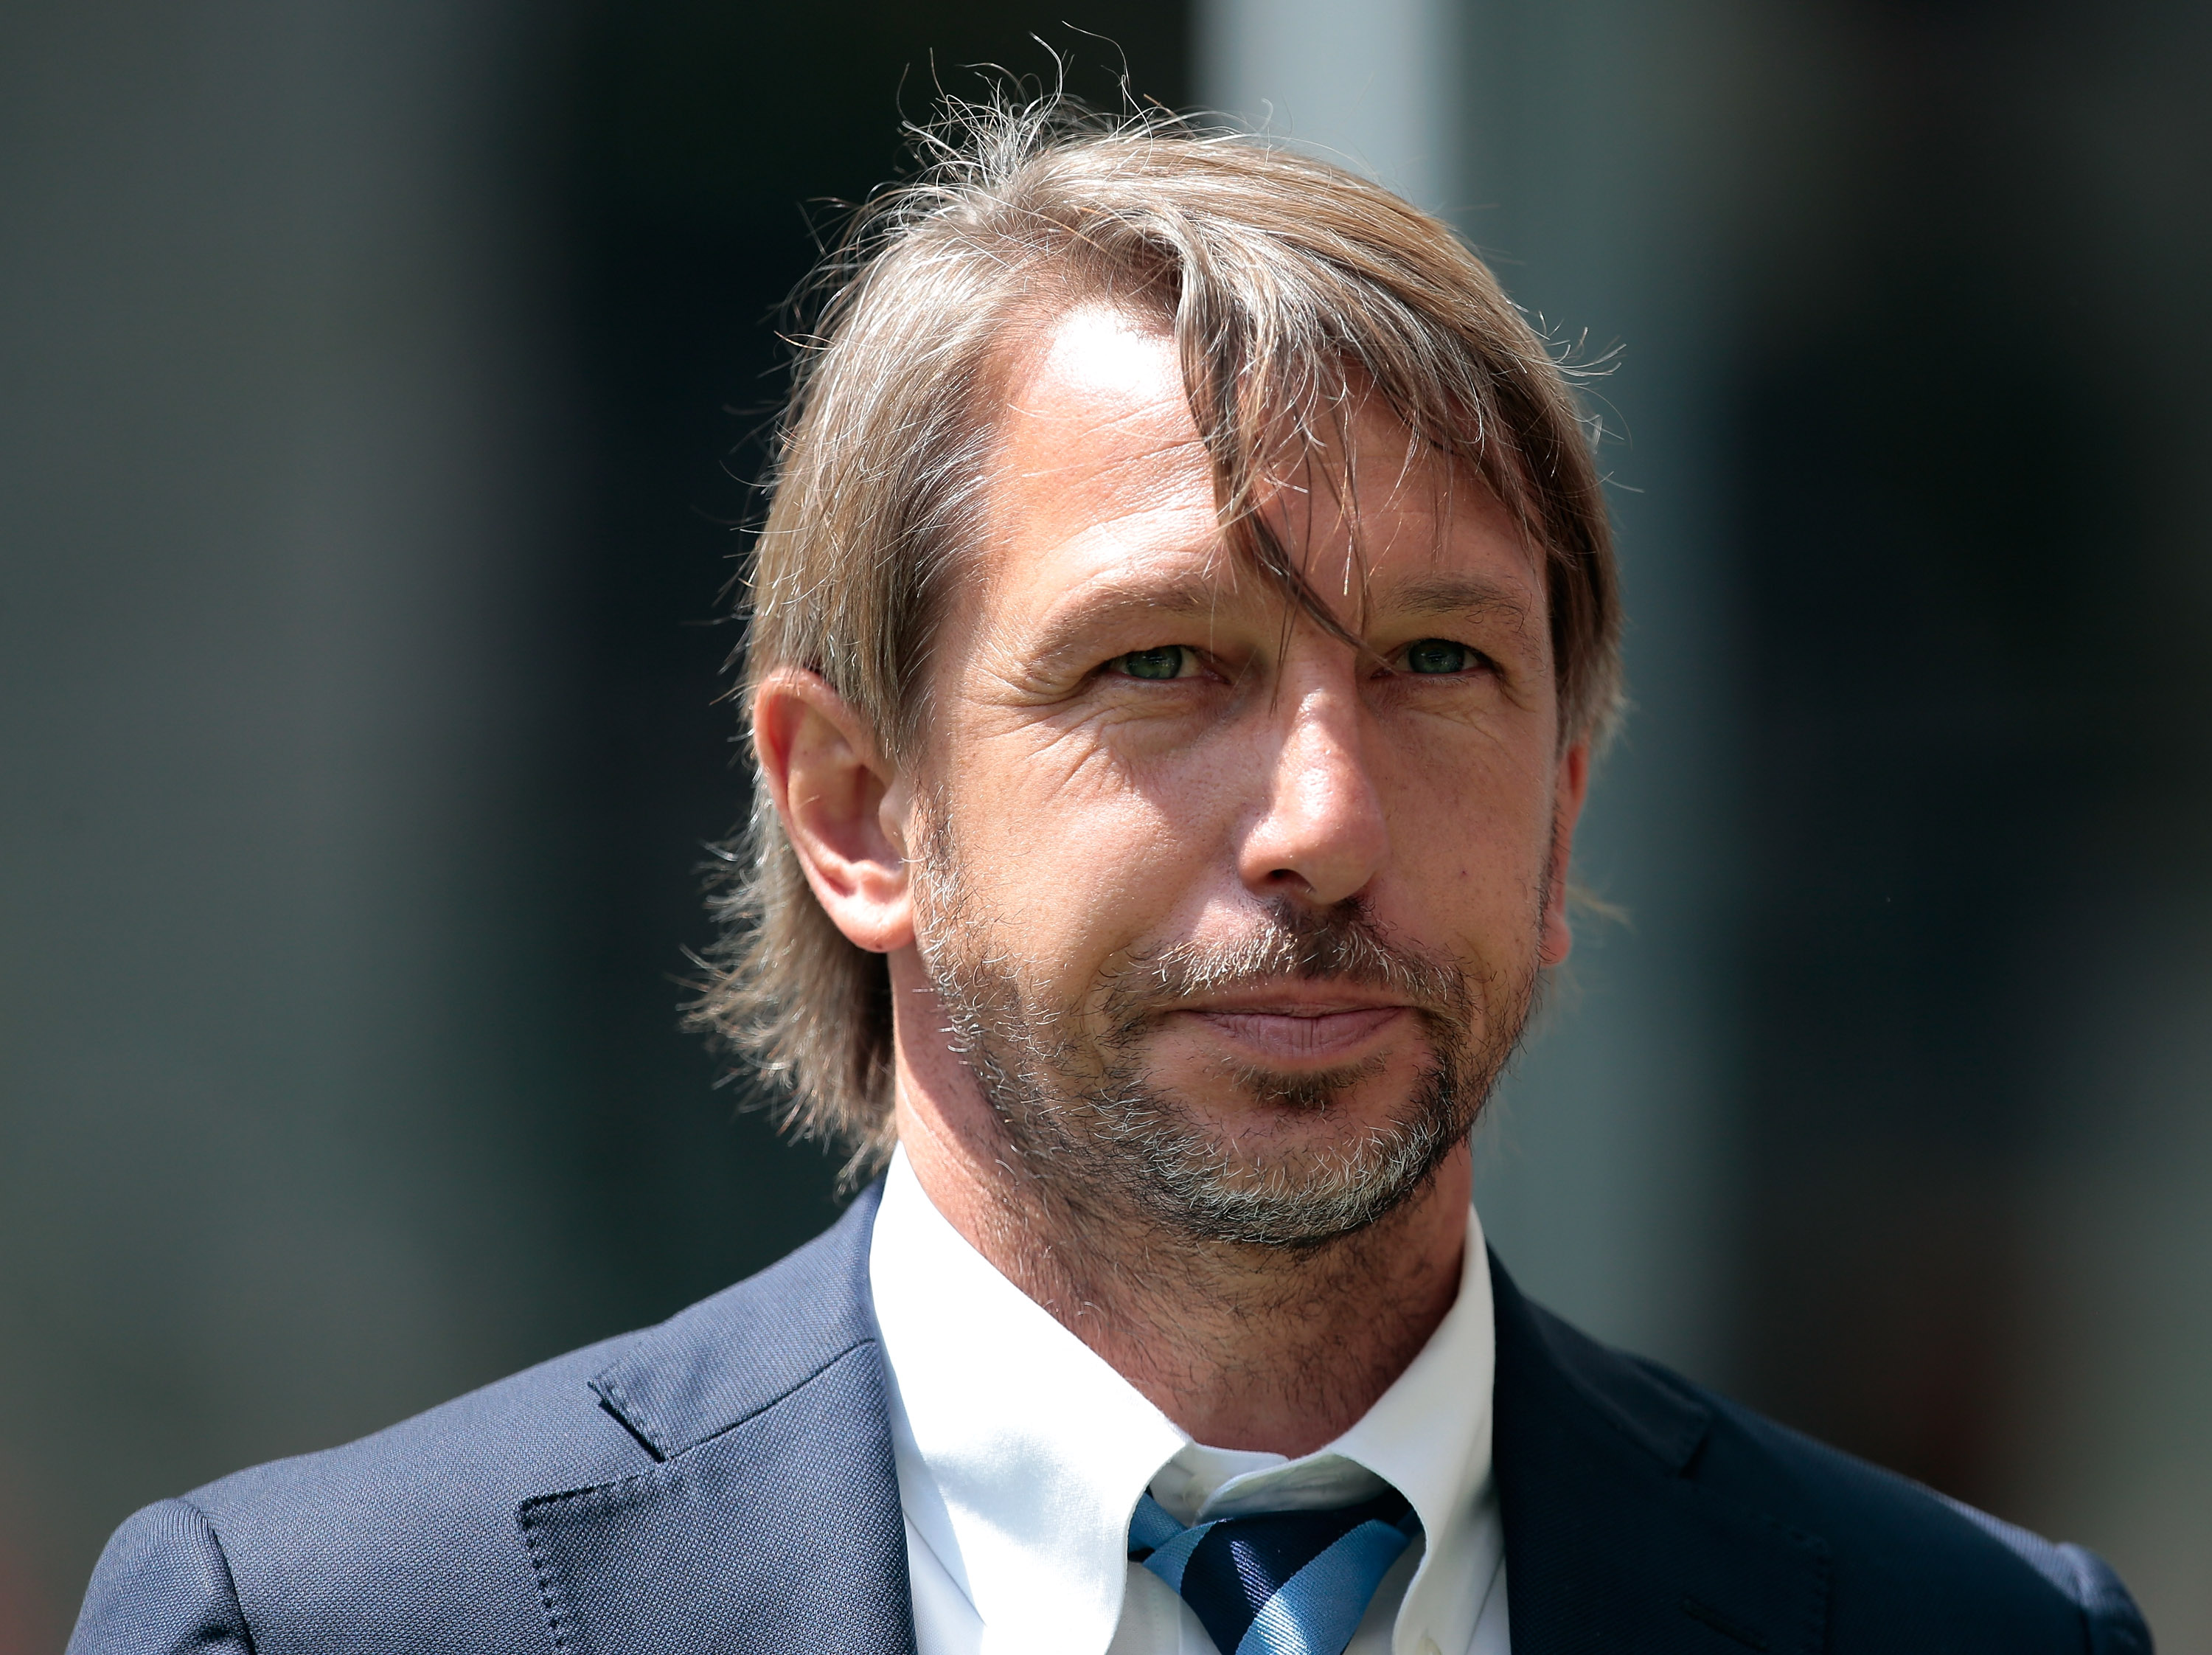 Inter Missing Key Players For Primavera Scudetto Showdown